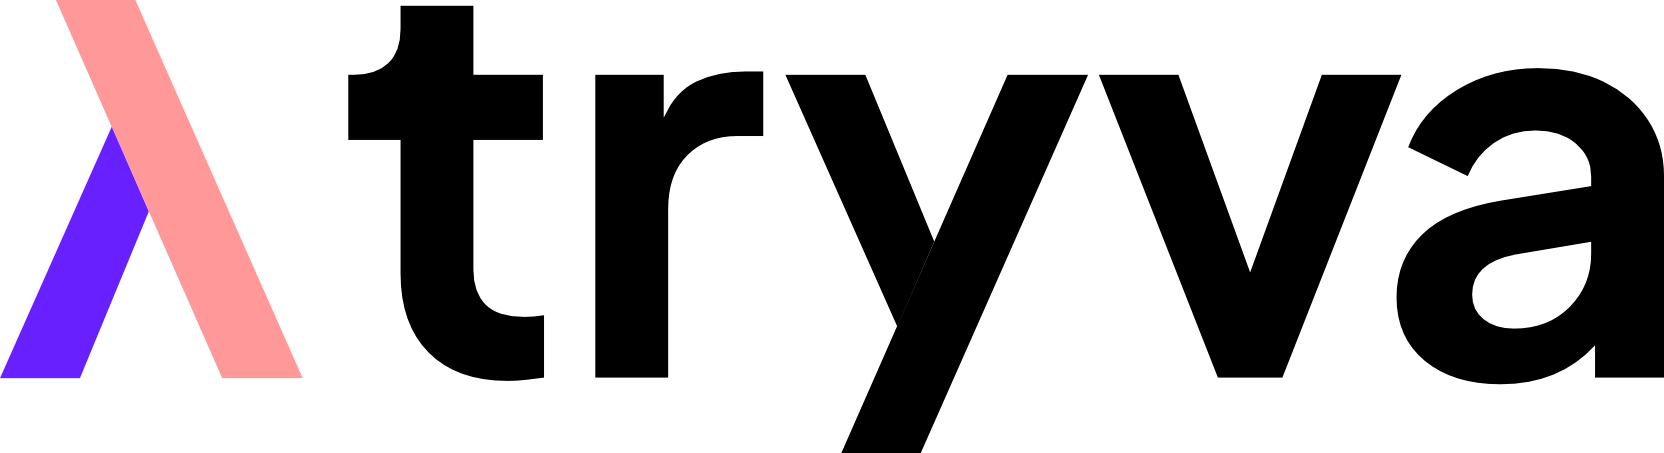 Company logo for Tryva (United Eyes AB)